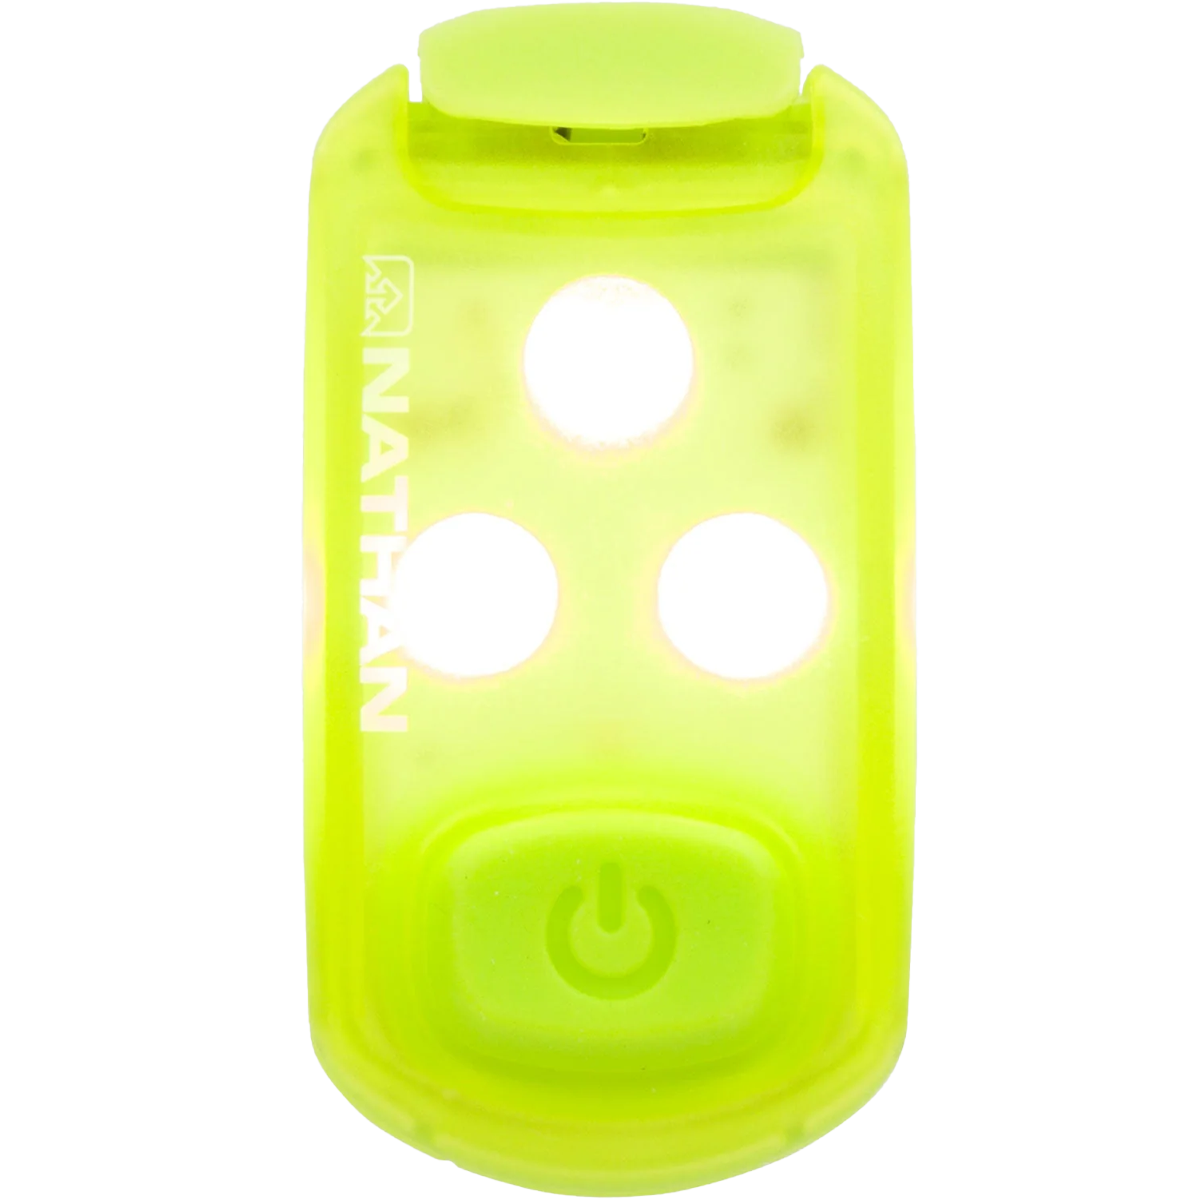 Strobe Light Safety LED Light Clip alternate view